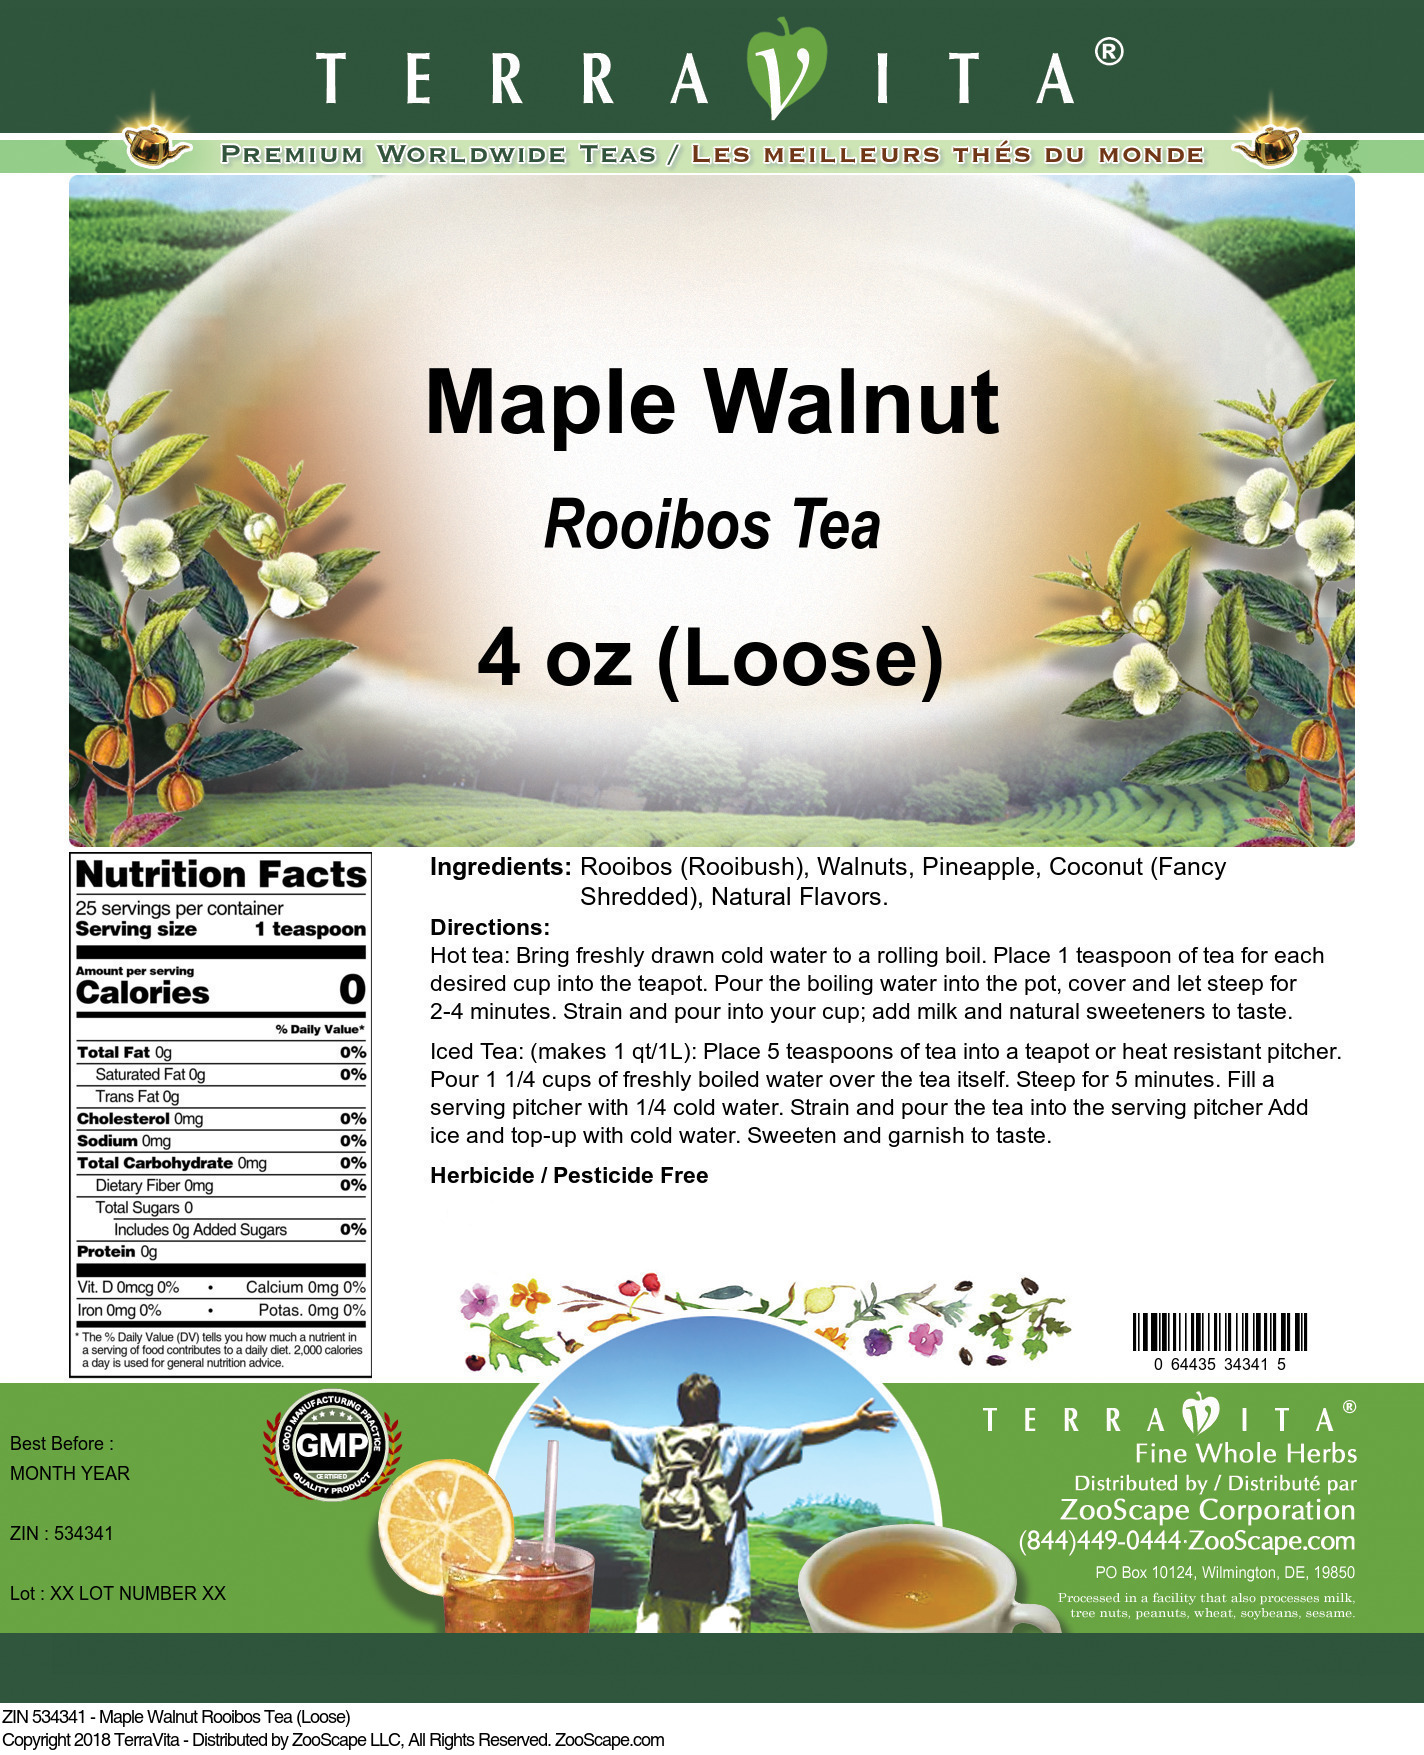 Maple Walnut Rooibos Tea (Loose) - Label